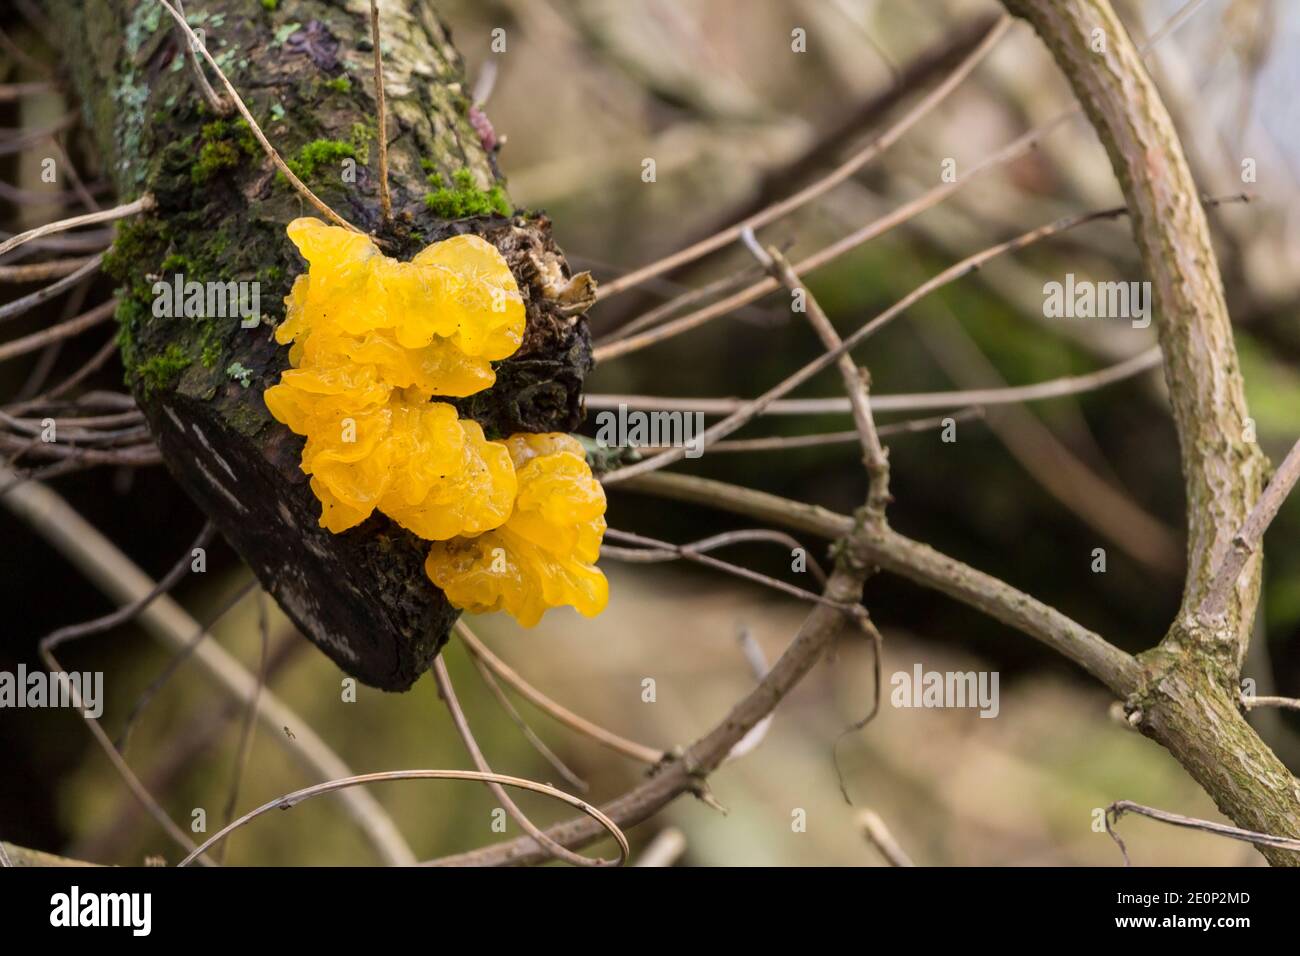 Gelbe Hirnpilze (Tremella mesenterica) Winter bei nassem Wetter weich glänzend gallertartige unregelmäßige gefaltete Früchte Körper auf altem Ast über kleinem Bach Stockfoto